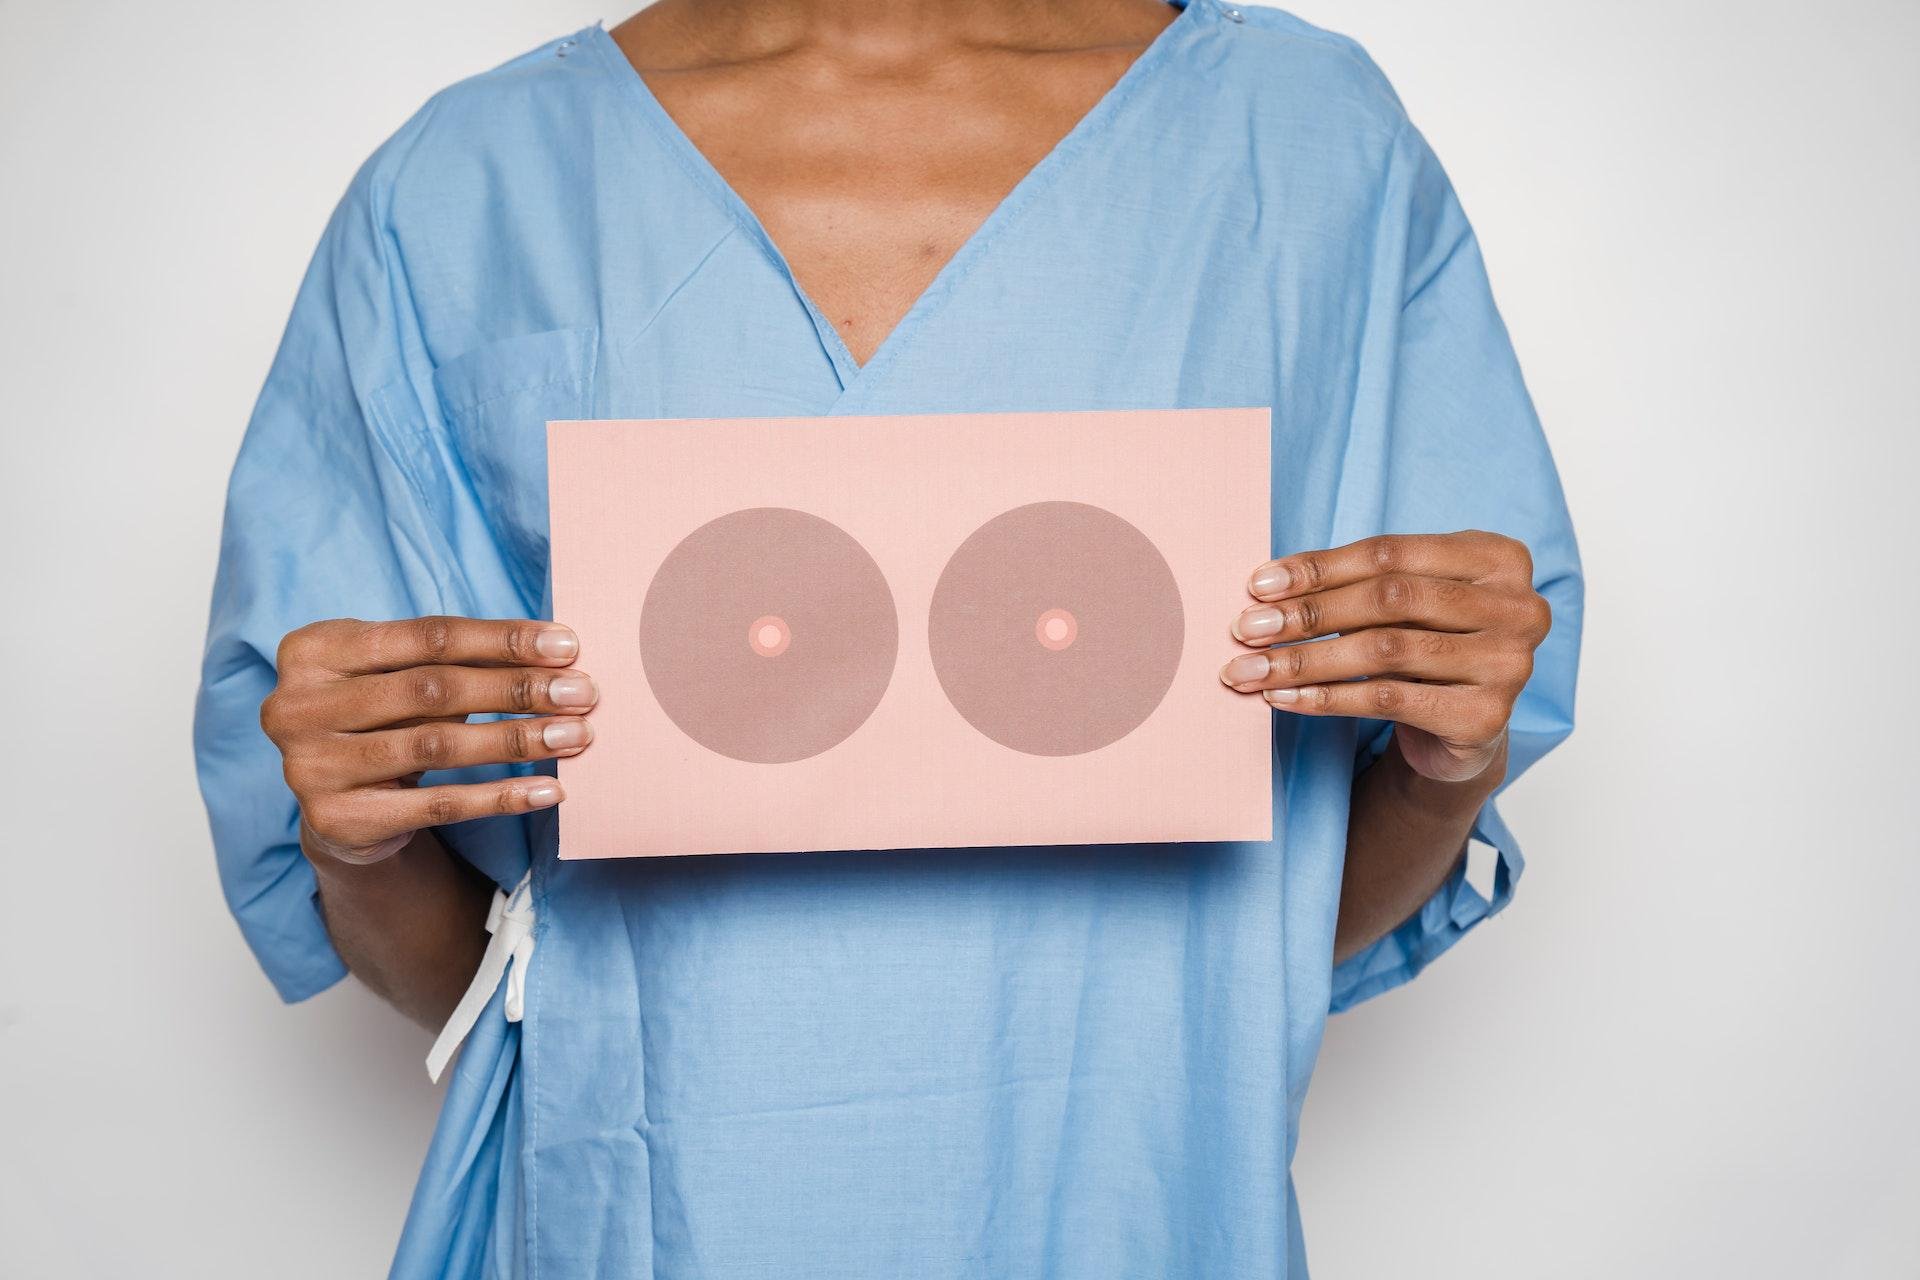 O mês de outubro é dedicado aos esforços de conscientização sobre o câncer de mama (Fonte: Pexels/Klaus Nielsen)